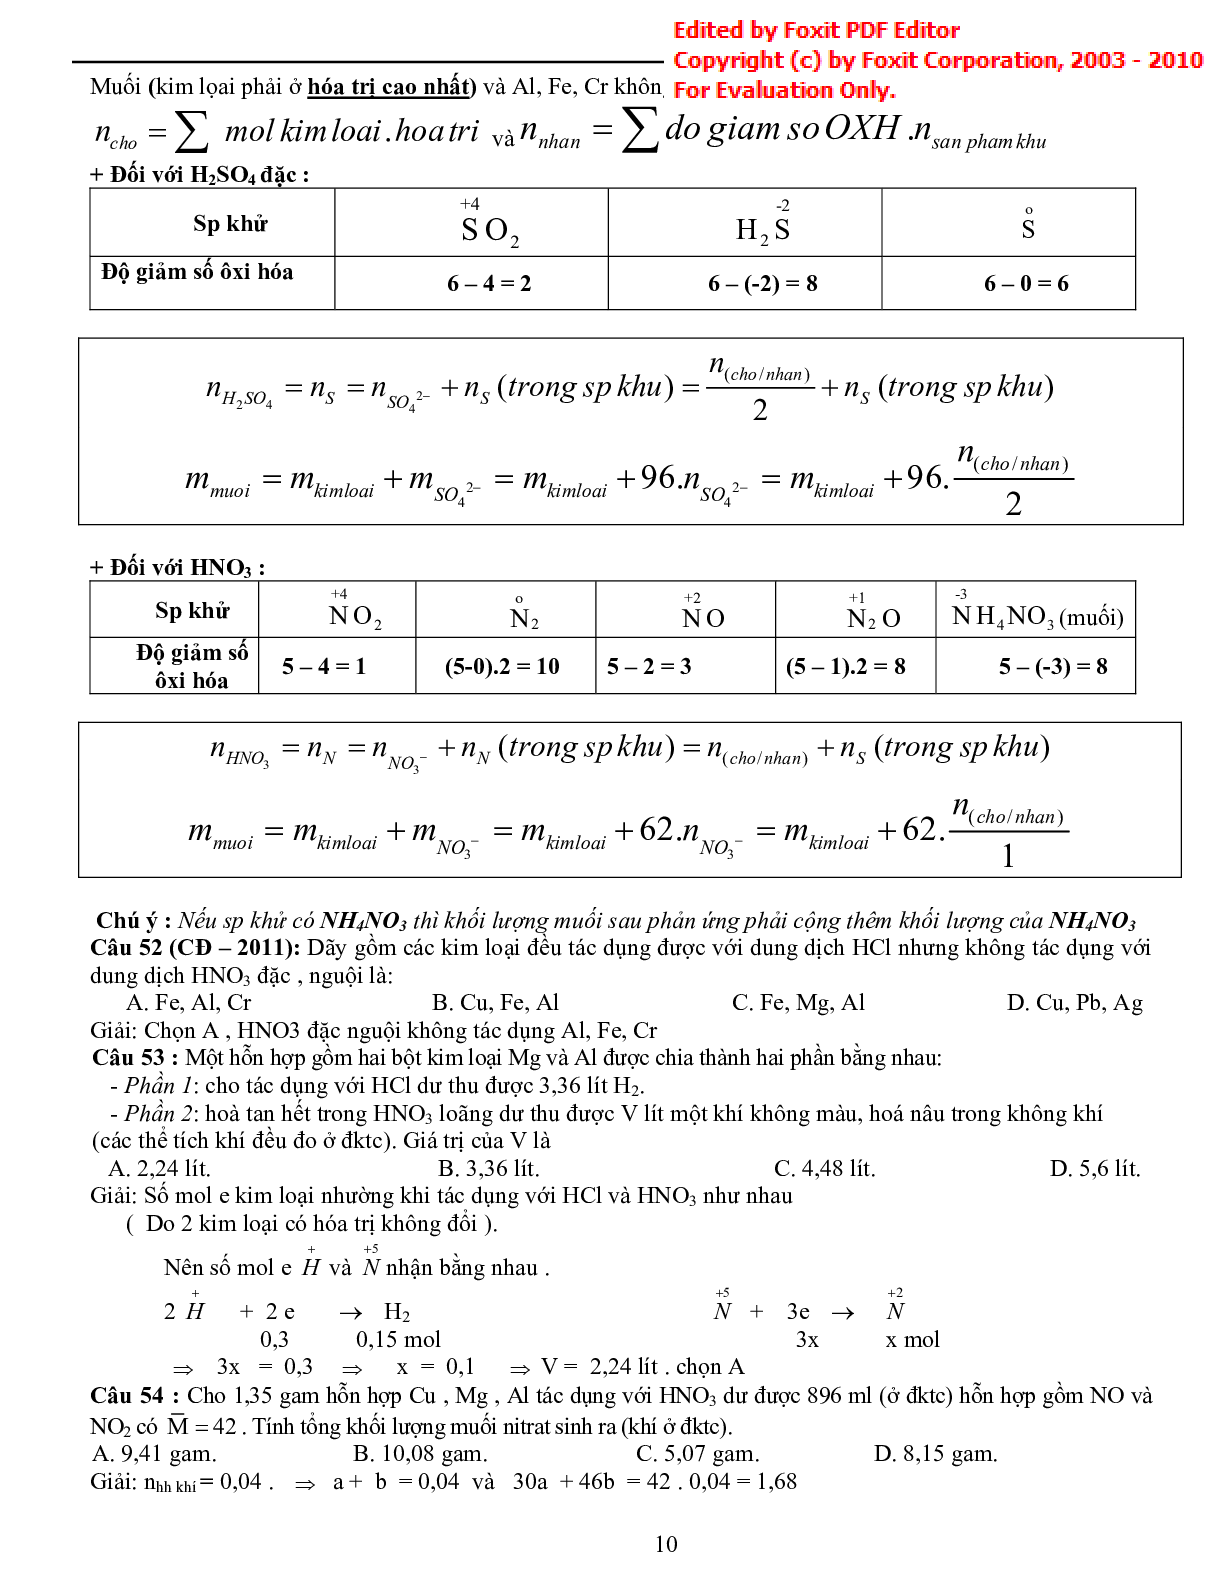 Bài tập về tổng hợp phương pháp giải nhanh hóa vô cơ có đáp án (trang 10)